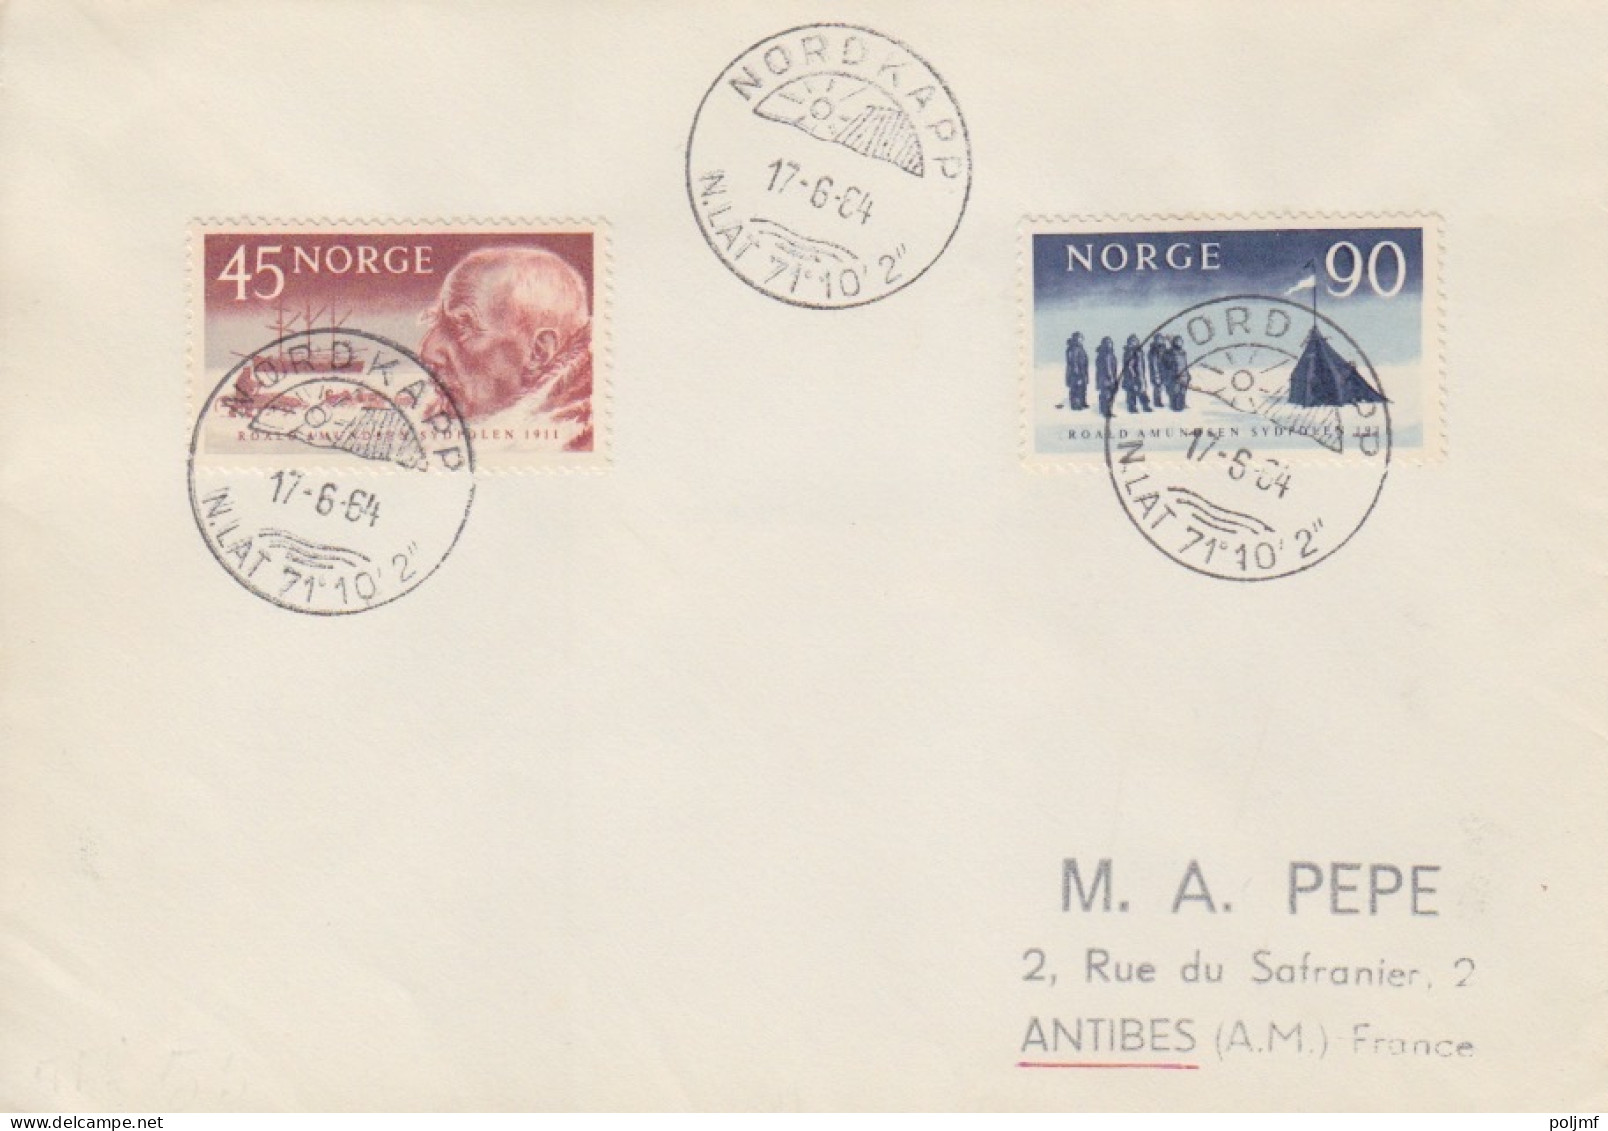 2 Lettres Obl. Nord Kapp Le 17/6/64 Sur N° 376, 377, 378 (AGI), 419, 420 (Admunsen) - Covers & Documents